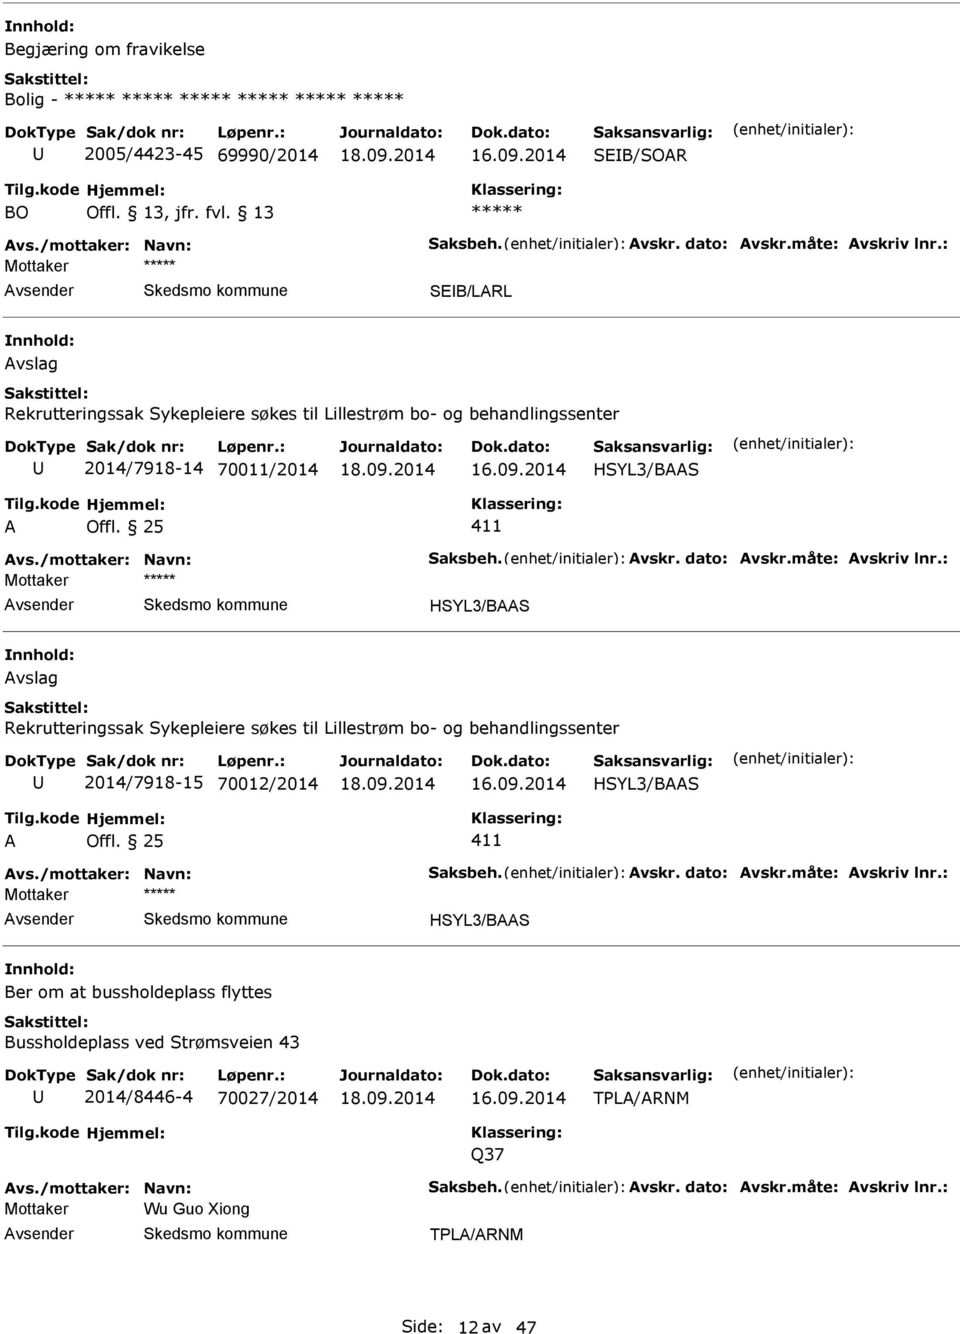 måte: vskriv lnr.: Mottaker HSYL3/BS vslag Rekrutteringssak Sykepleiere søkes til Lillestrøm bo- og behandlingssenter 2014/7918-15 70012/2014 HSYL3/BS 411 vs./mottaker: Navn: Saksbeh. vskr. dato: vskr.